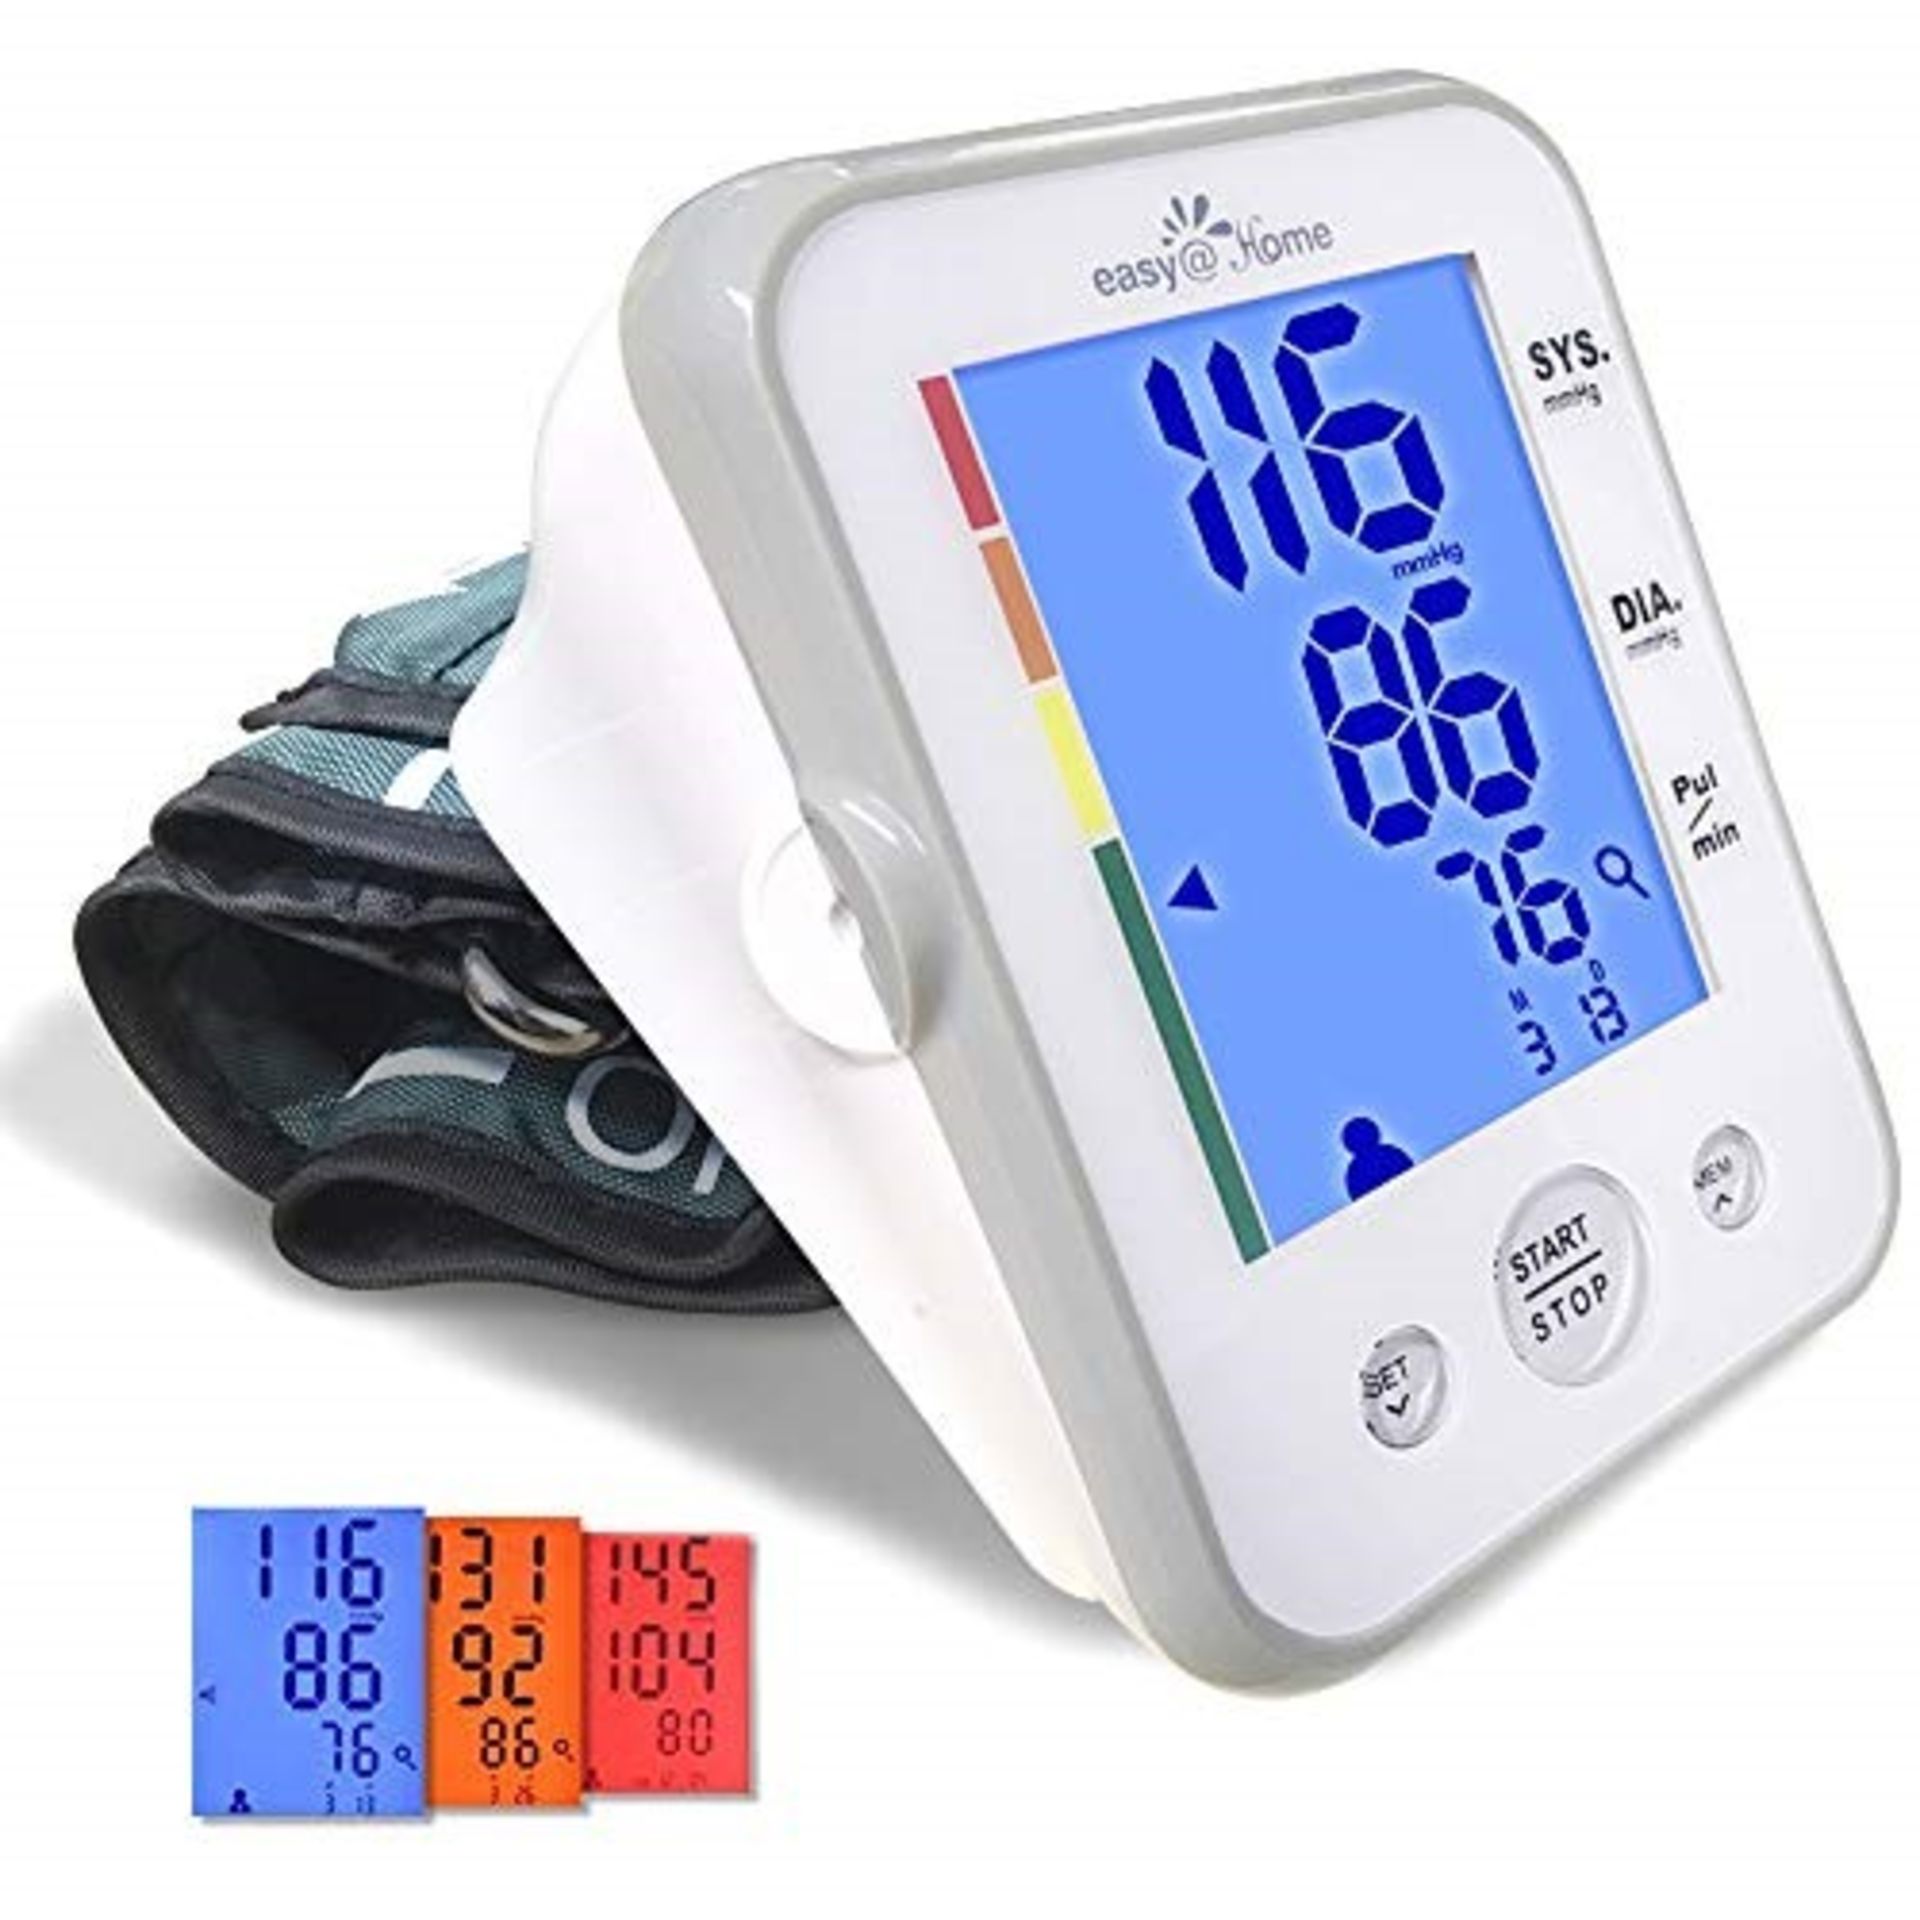 U�p�p�e�r� �A�r�m� �B�l�o�o�d� �P�r�e�s�s�u�r�e� �M�o�n�i�t�o�r� �(�B�P� �M�o�n�i�t�o�r�)� �E�a�s�y�